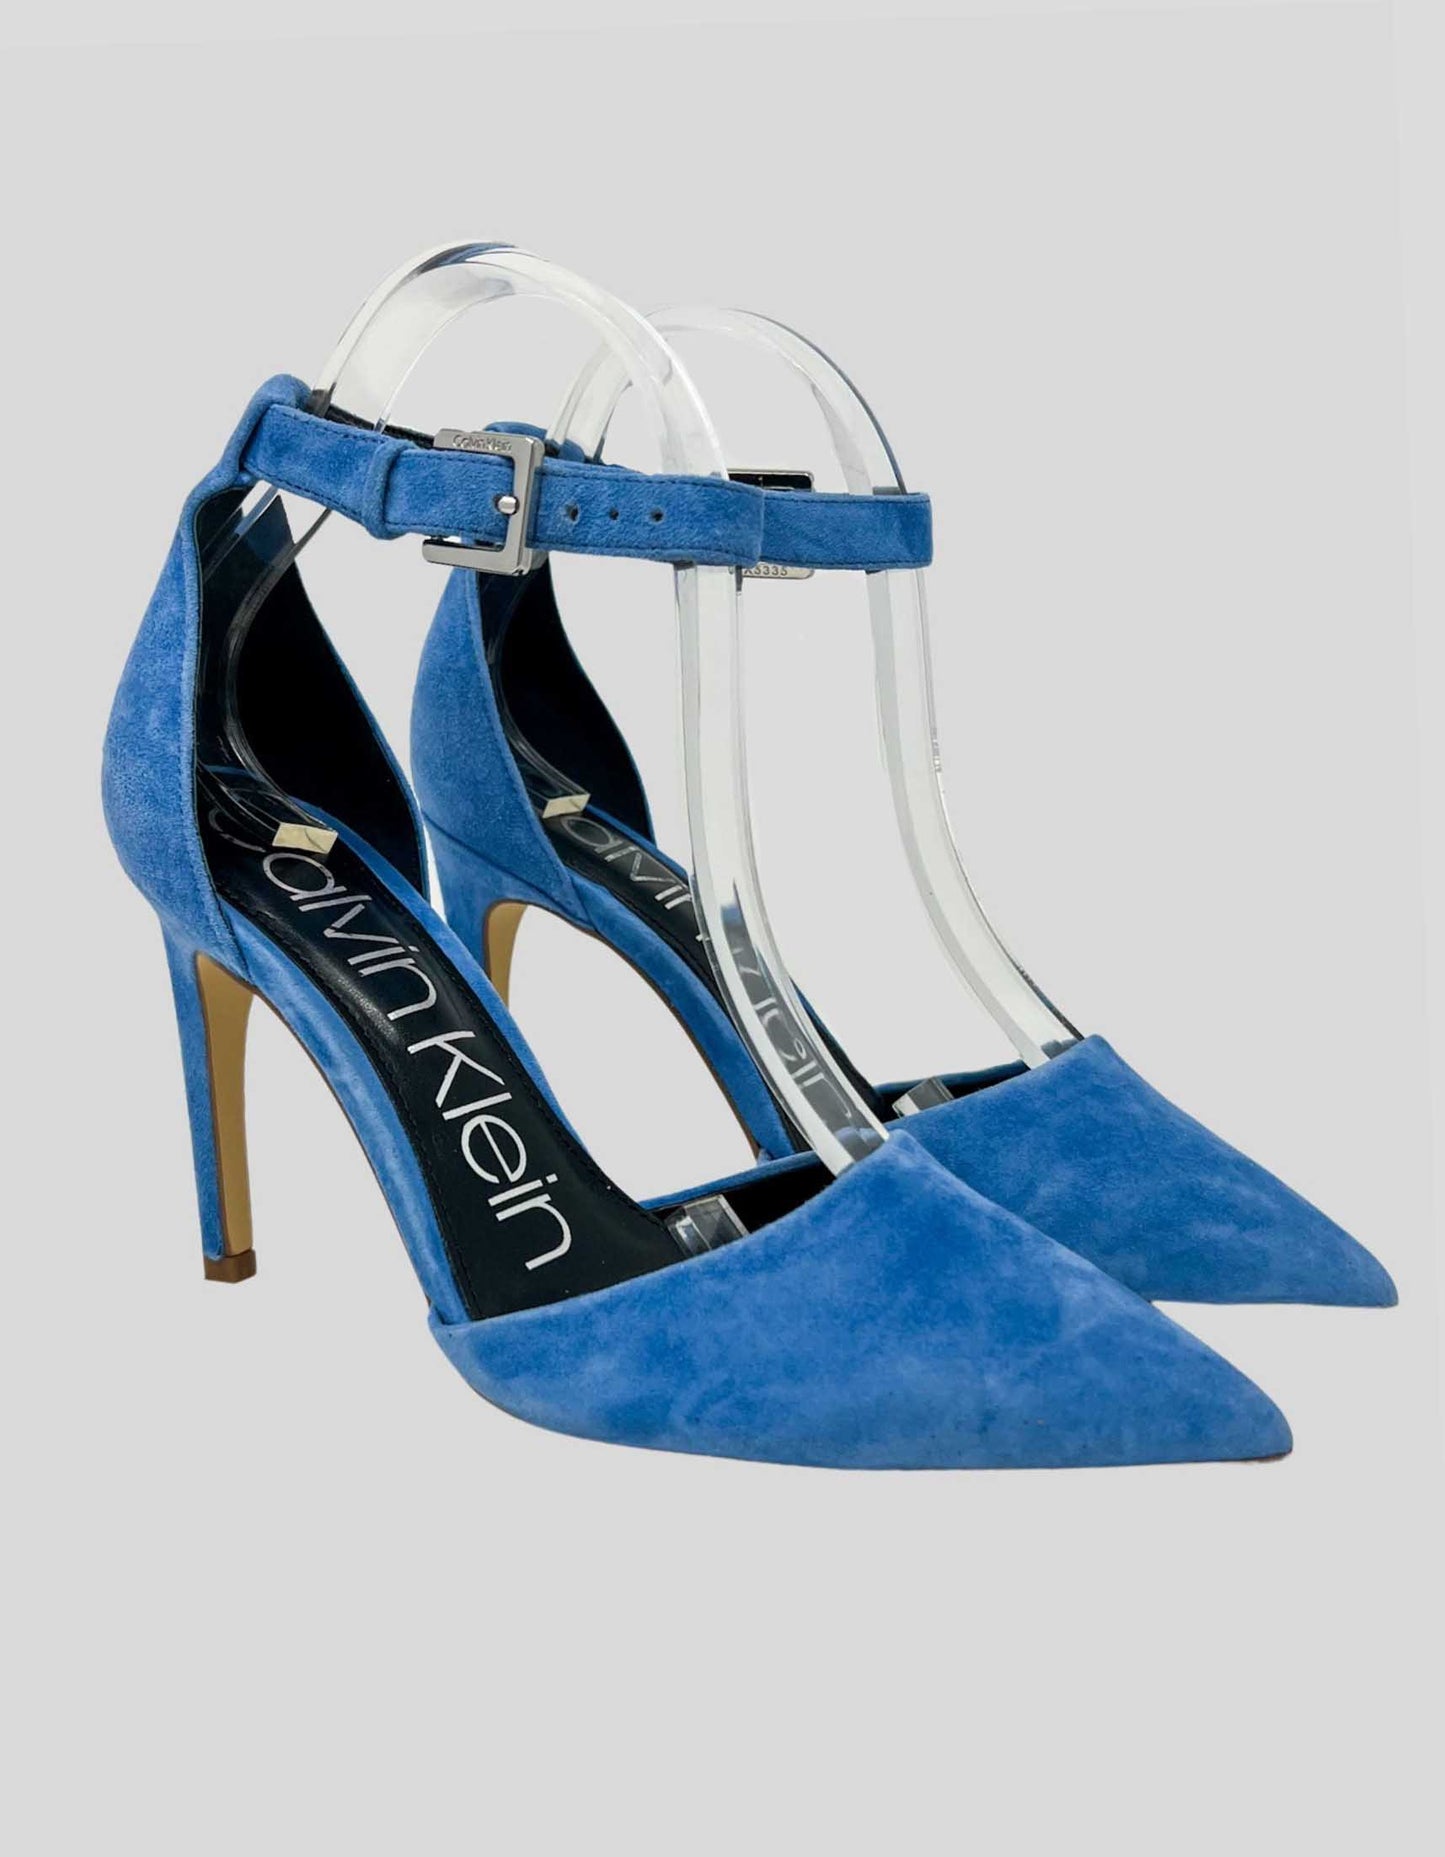 CALVIN KLEIN Baby Blue Suede Ankle Strap Heels - 7.5M US